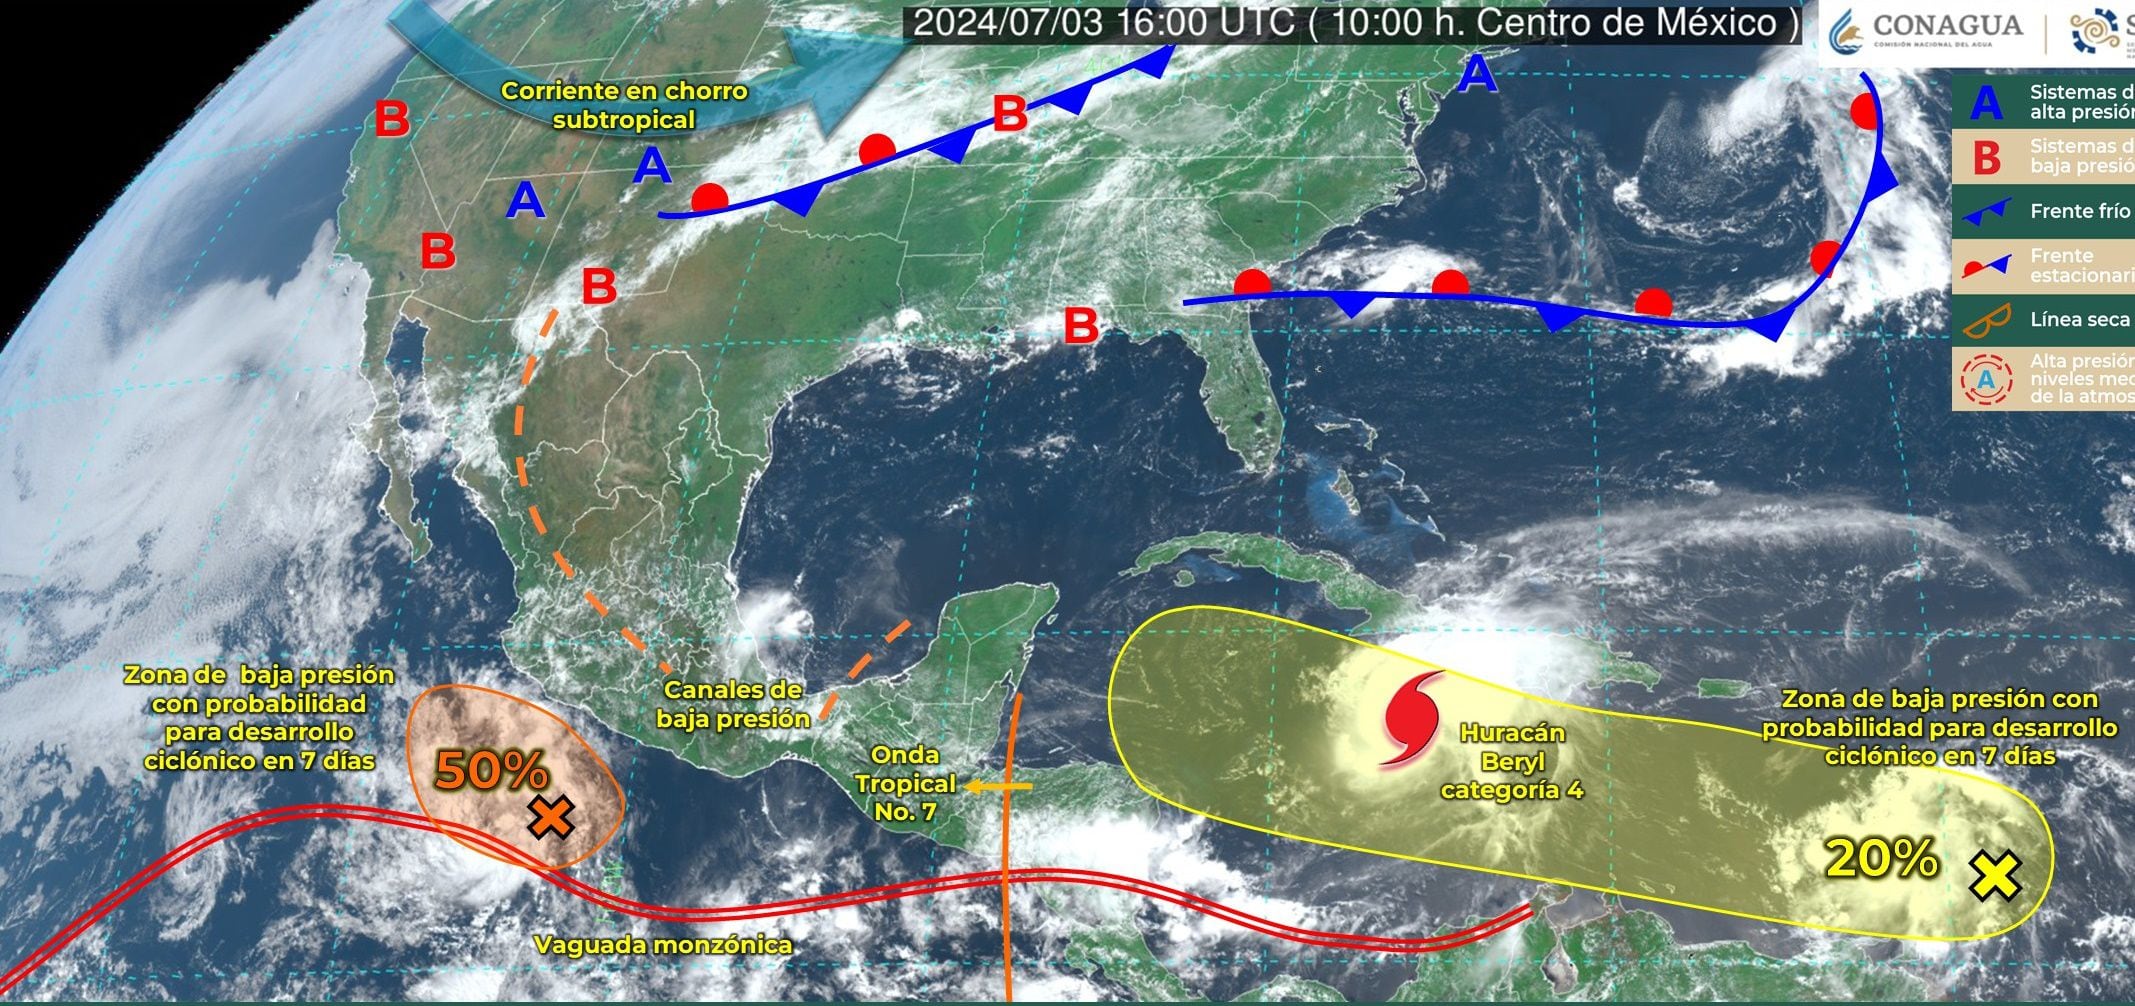 Huracán ‘Beryl’ no viene solo: Onda tropical 7 y canal de baja presión amenazan a la Península de Yucatán